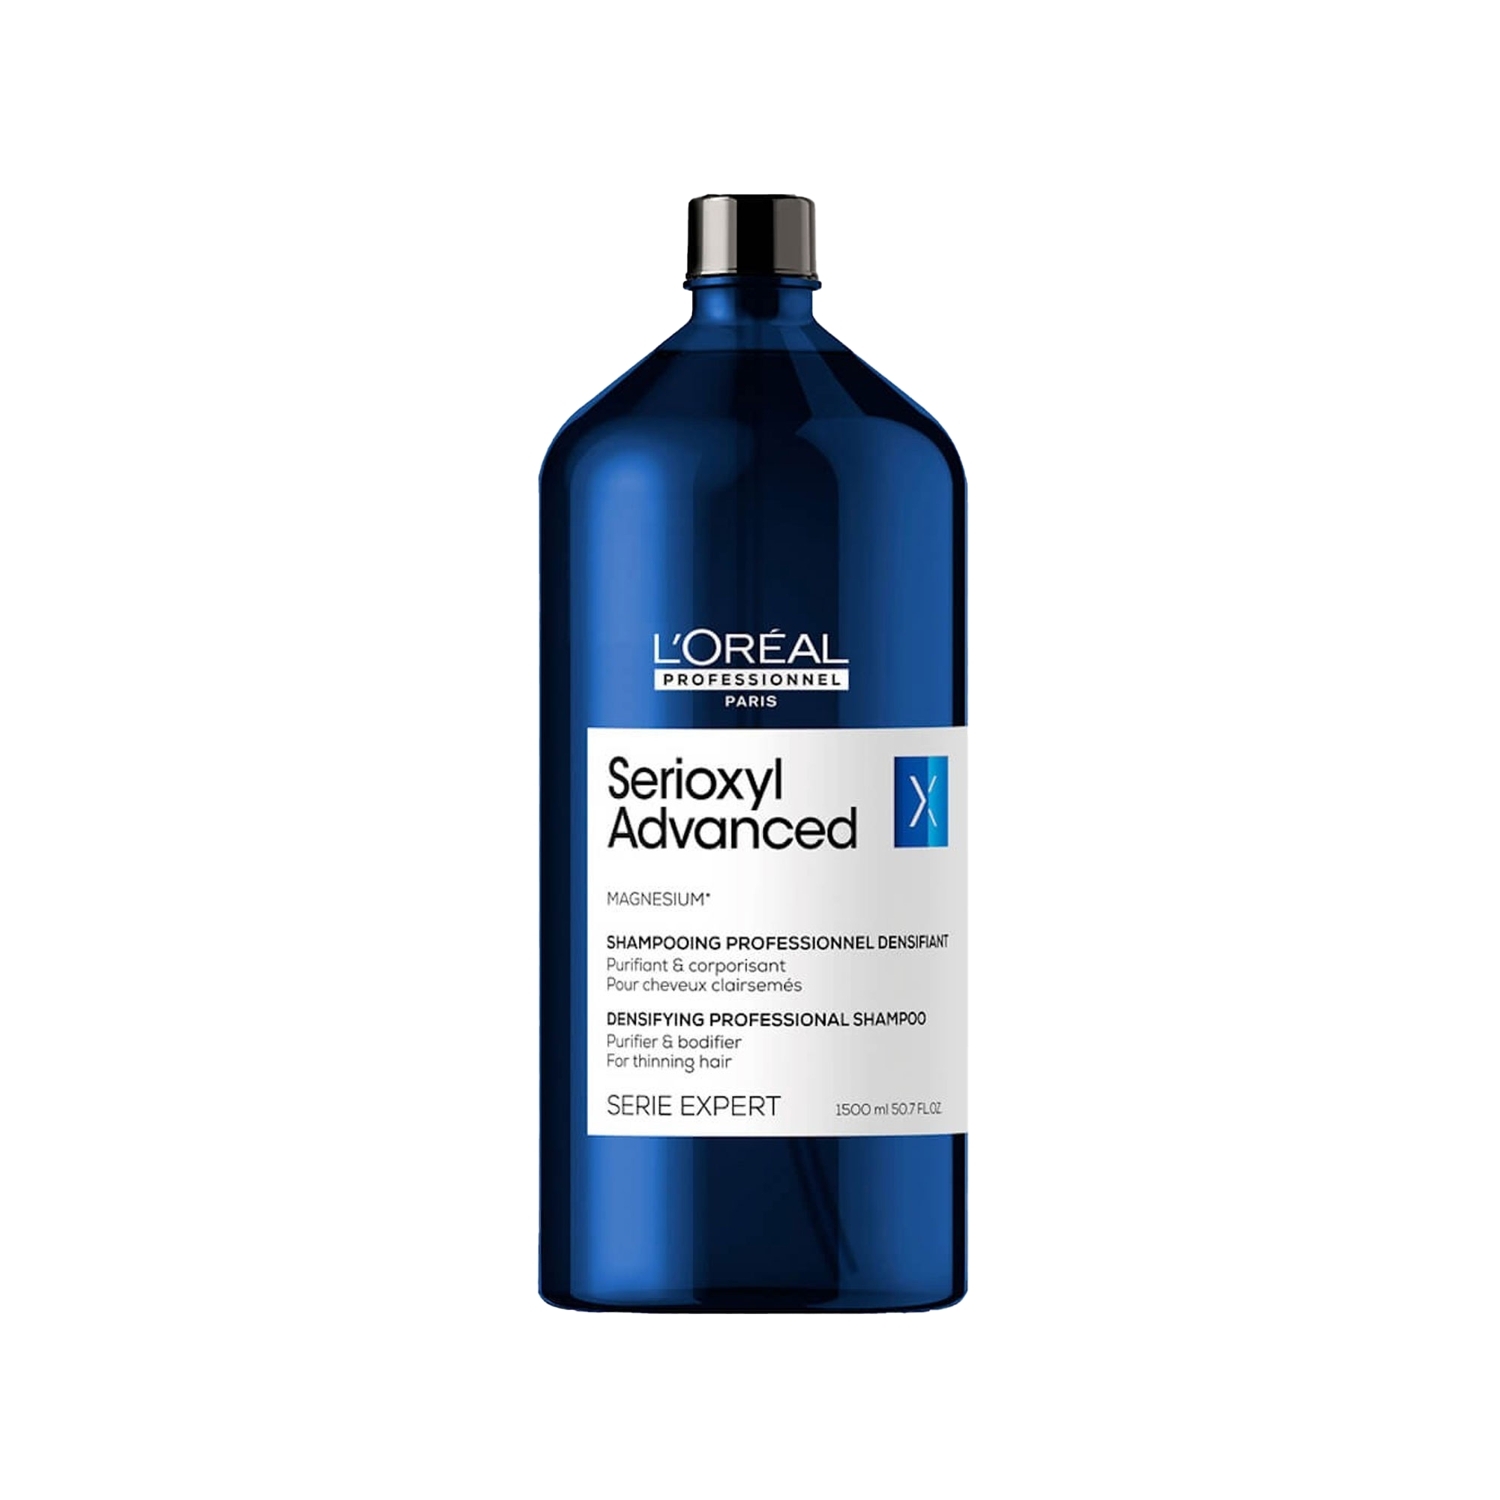 Loreal Professionnel Serie Expert Serioxyl Advanced İncelmiş Saç Telleri için Yoğunluk Kazandıran Şampuan 1500 ml